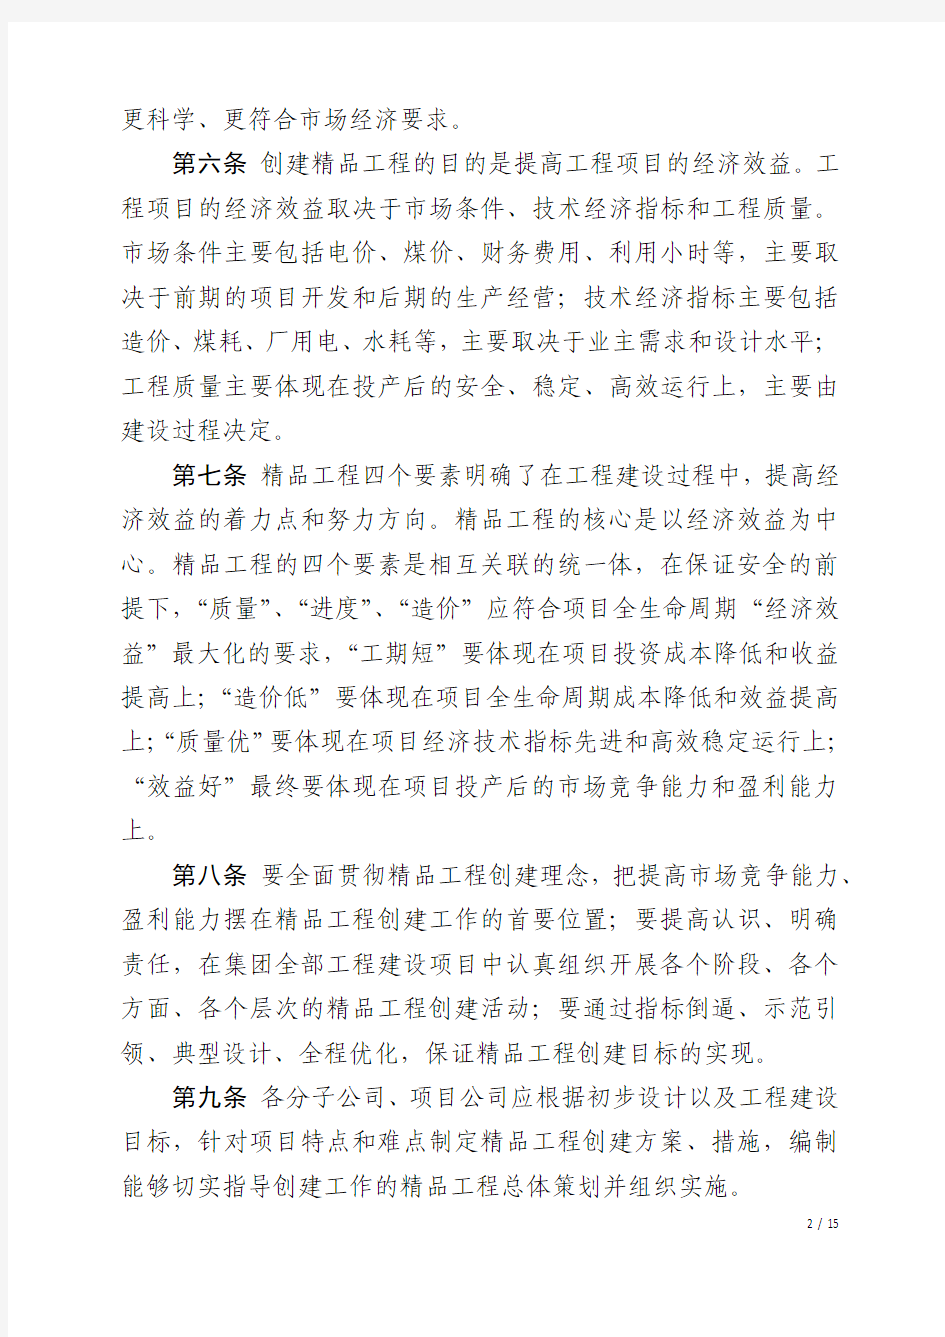 中国大唐集团公司火电项目精品工程管理办法